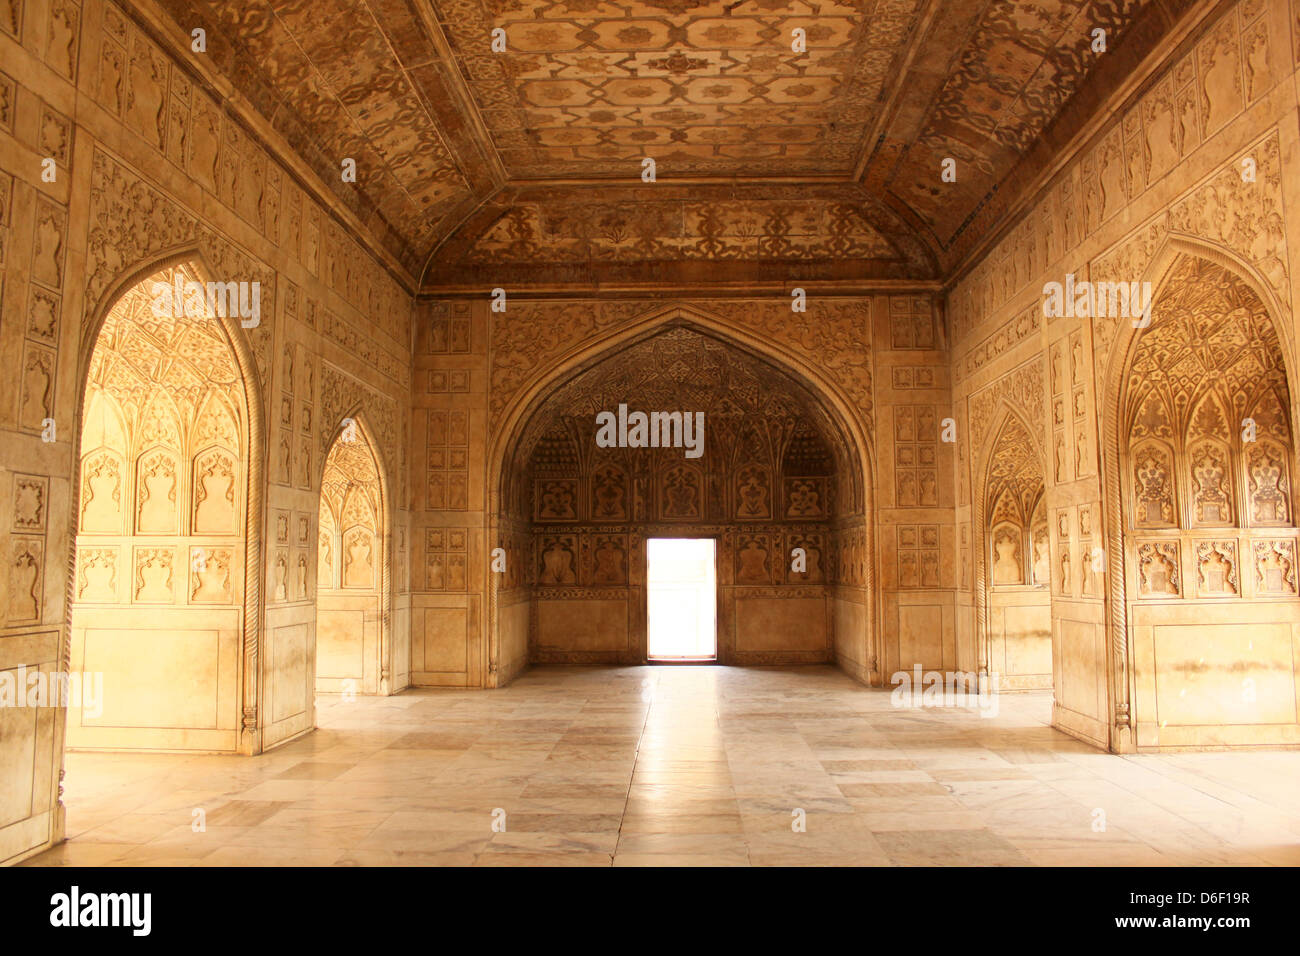 La princesse, d'un intérieur orné de très fort d'Agra site du patrimoine mondial de l'Agra, Uttar Pradesh, Inde Banque D'Images